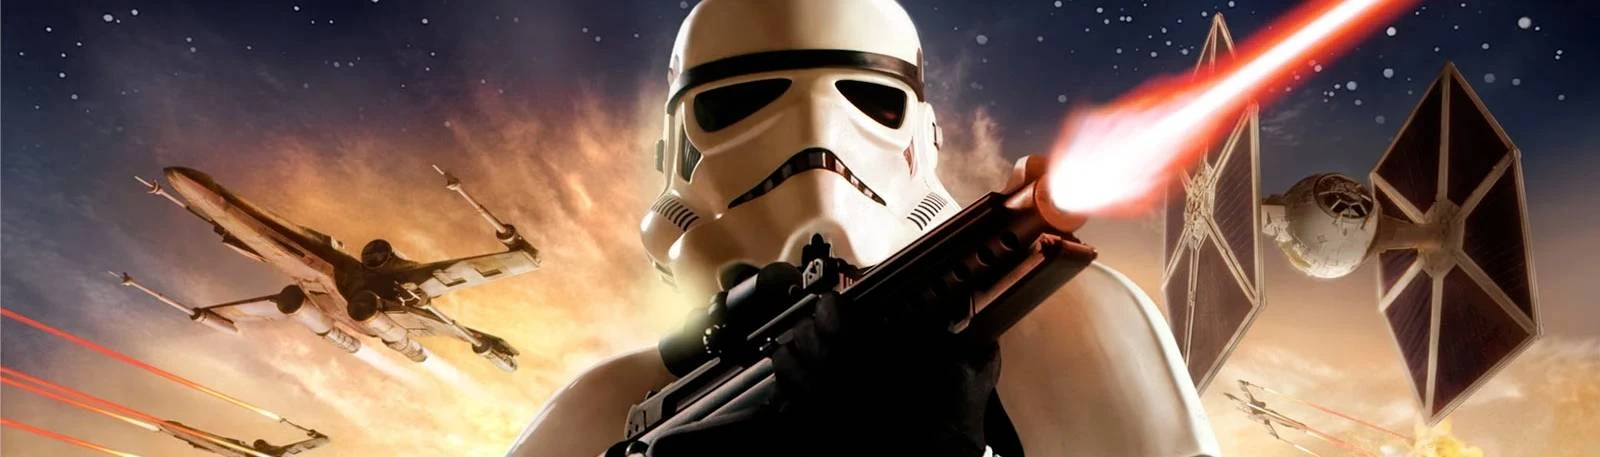 11 Best Star Wars Battlefront 2 2005 Mods - Pro Game Guides